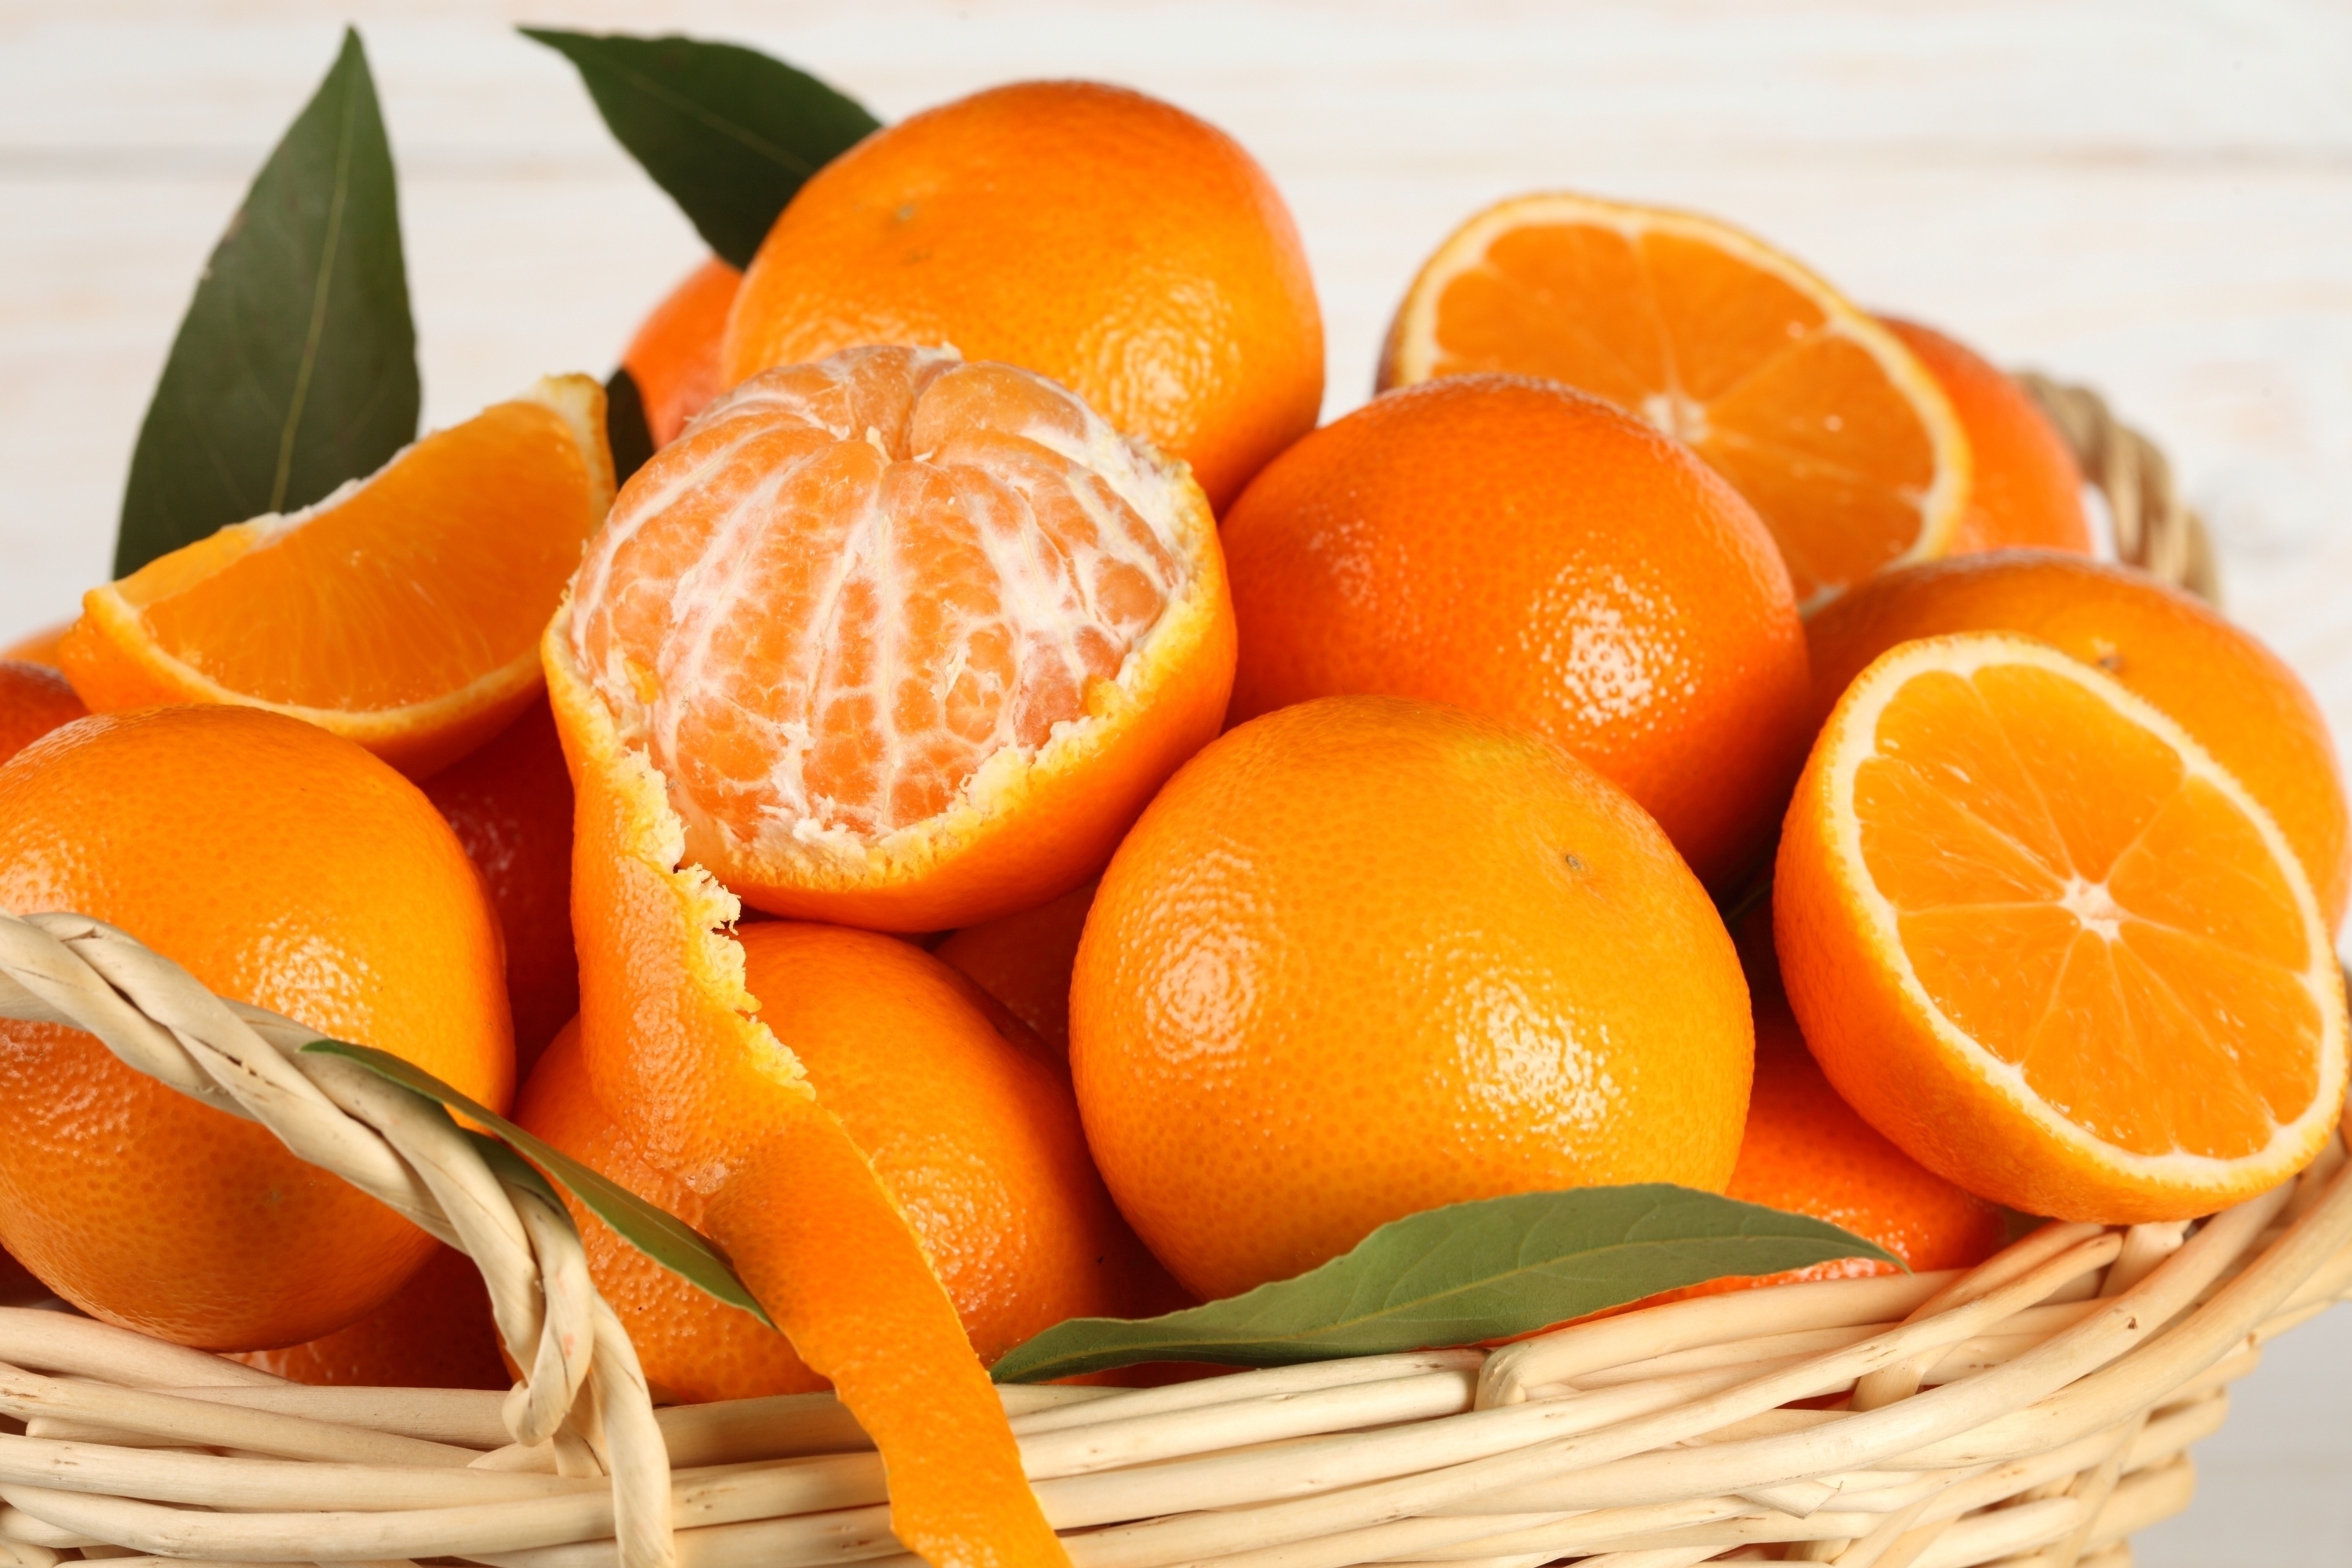 Si ndikon çaji i lëkurës së mandarinave në shëndetin e njeriut? – Indeksonline.net